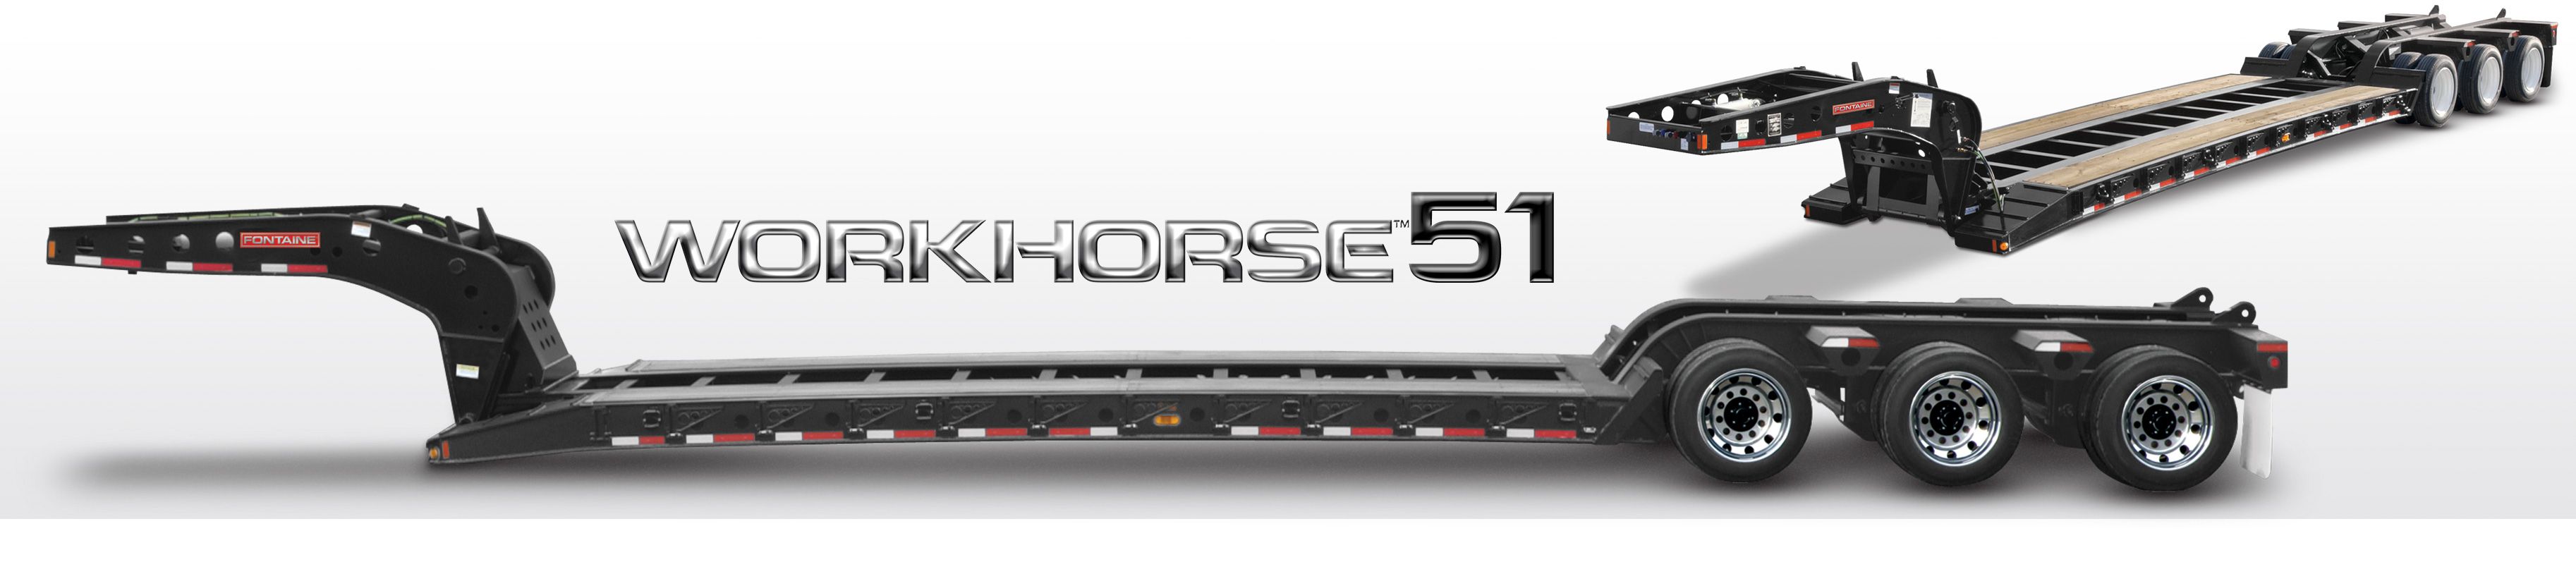 Workhorse 51 lowbed trailer